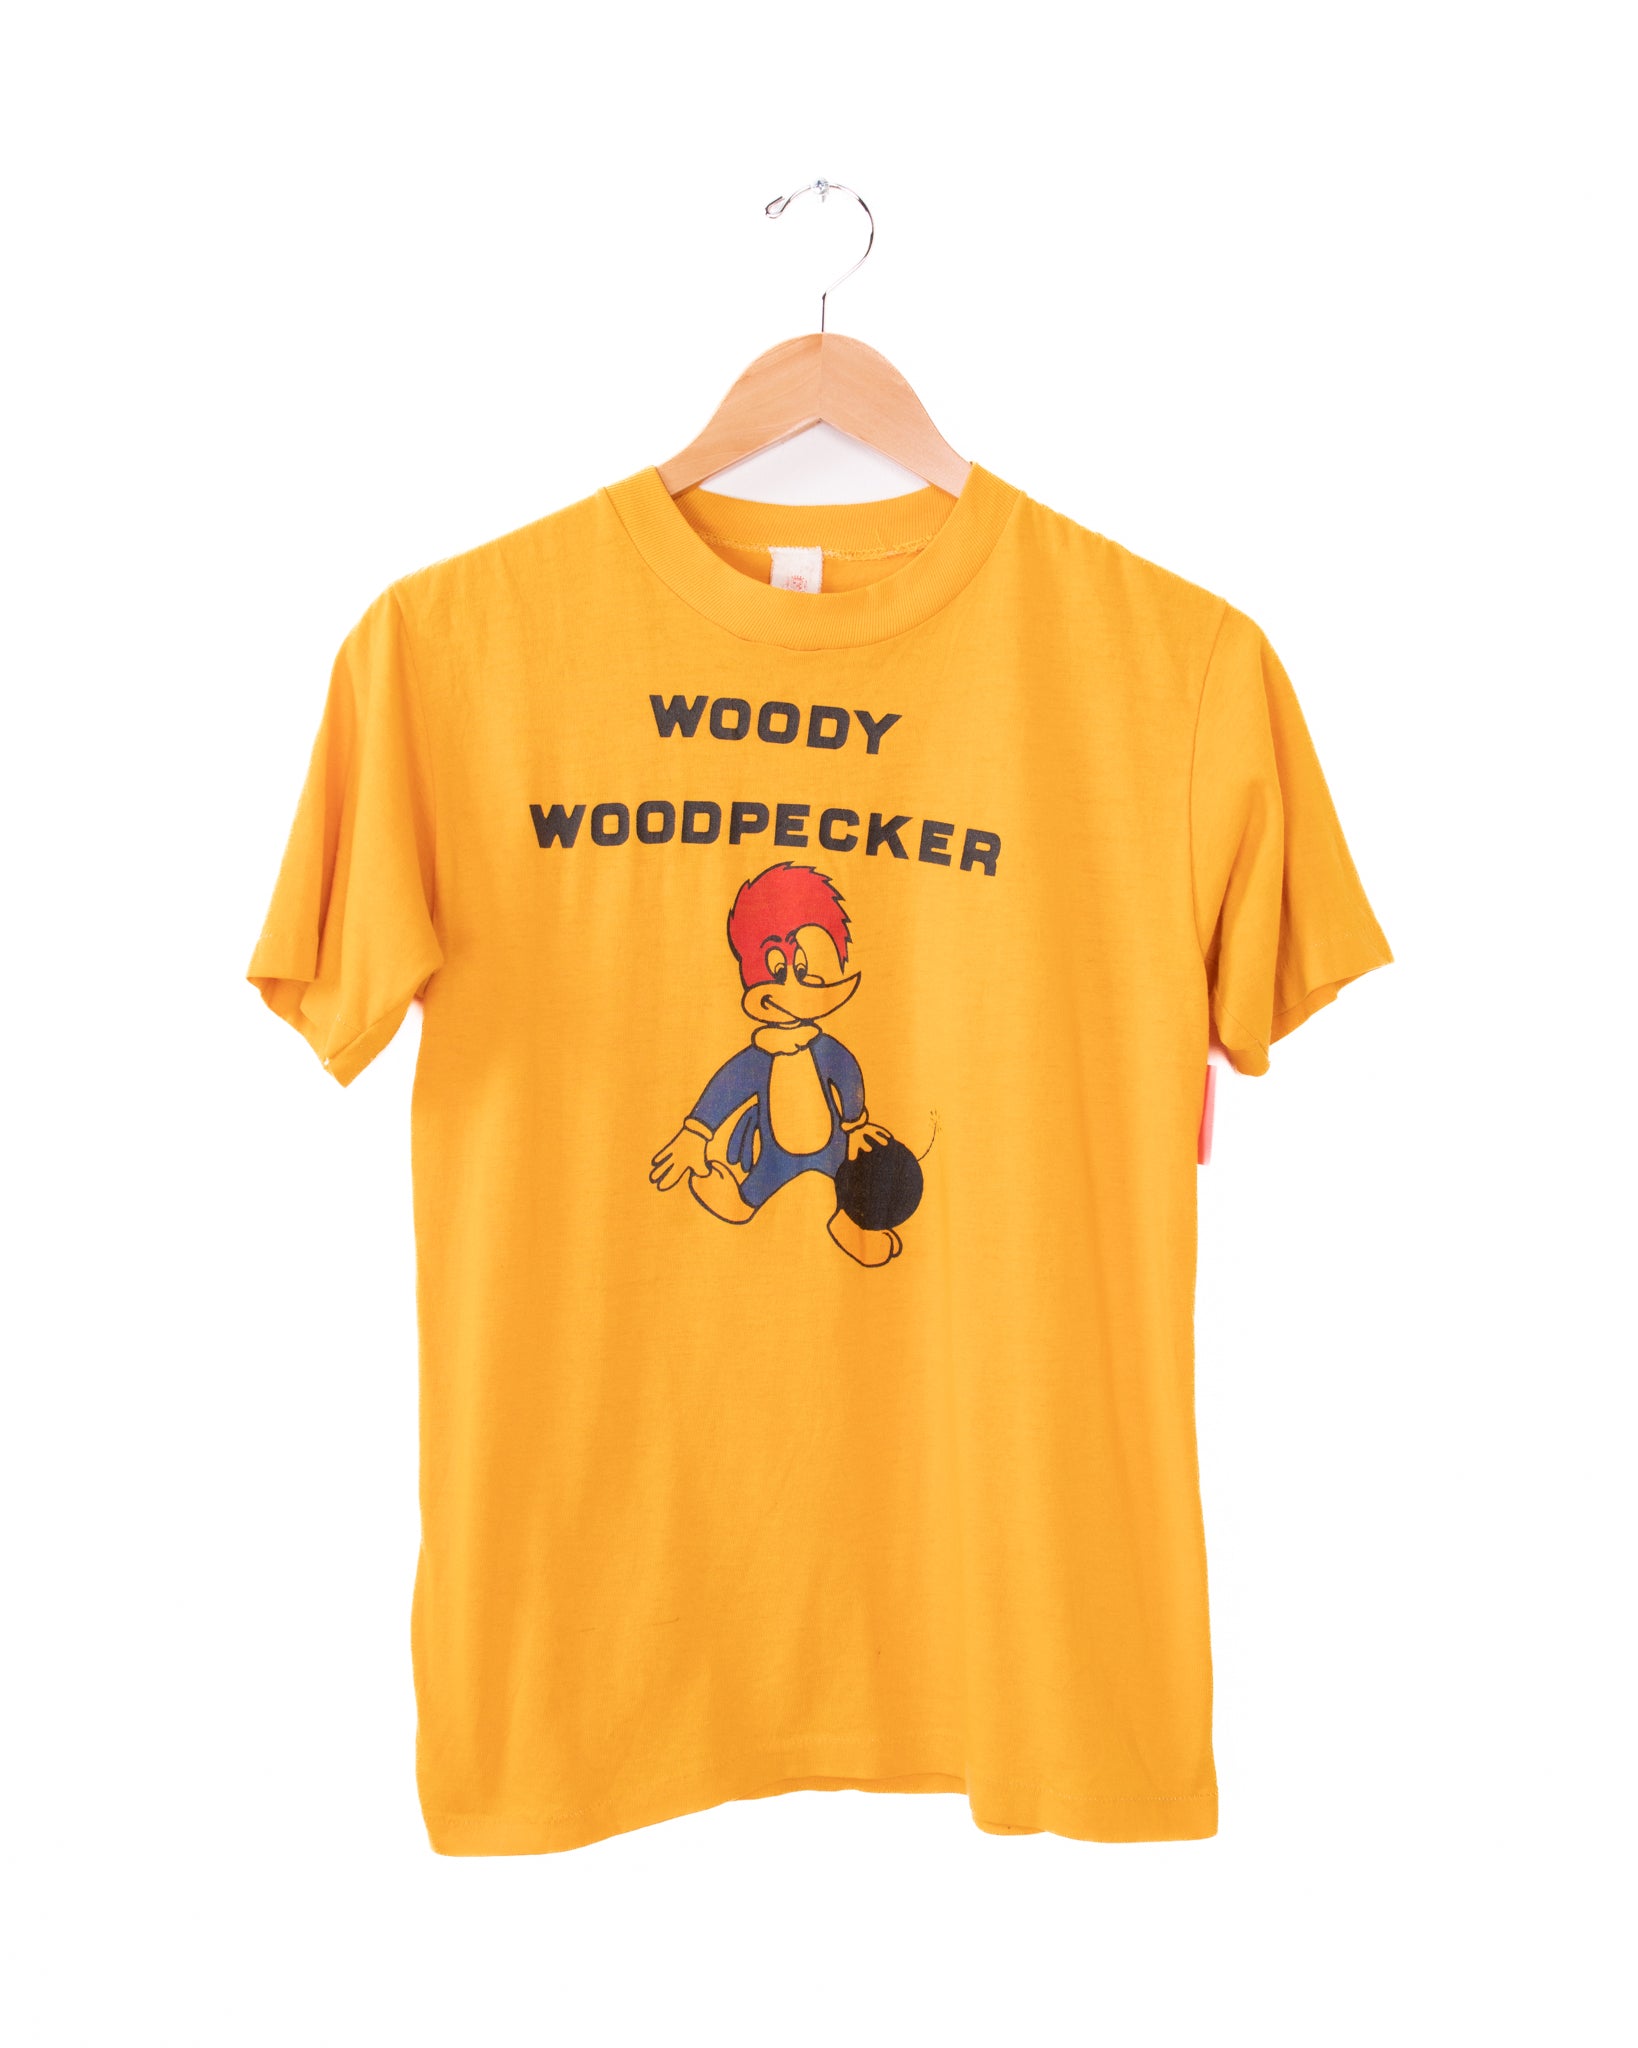 Vintage Woody Woodpecker Pecker T-Shirt